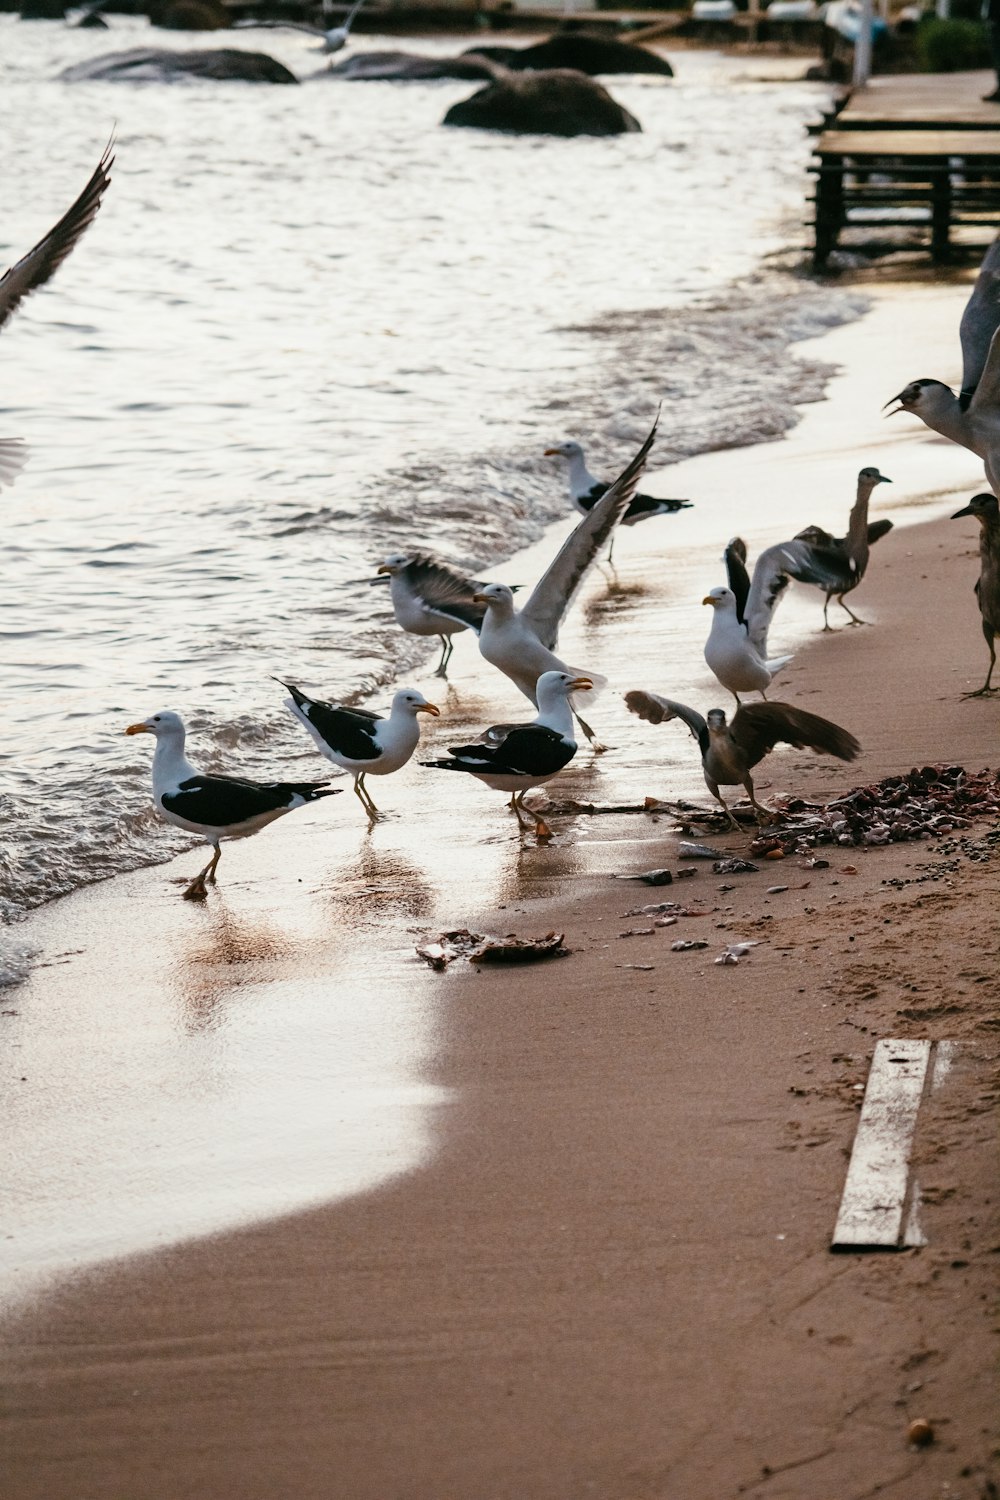 a group of birds on the beach